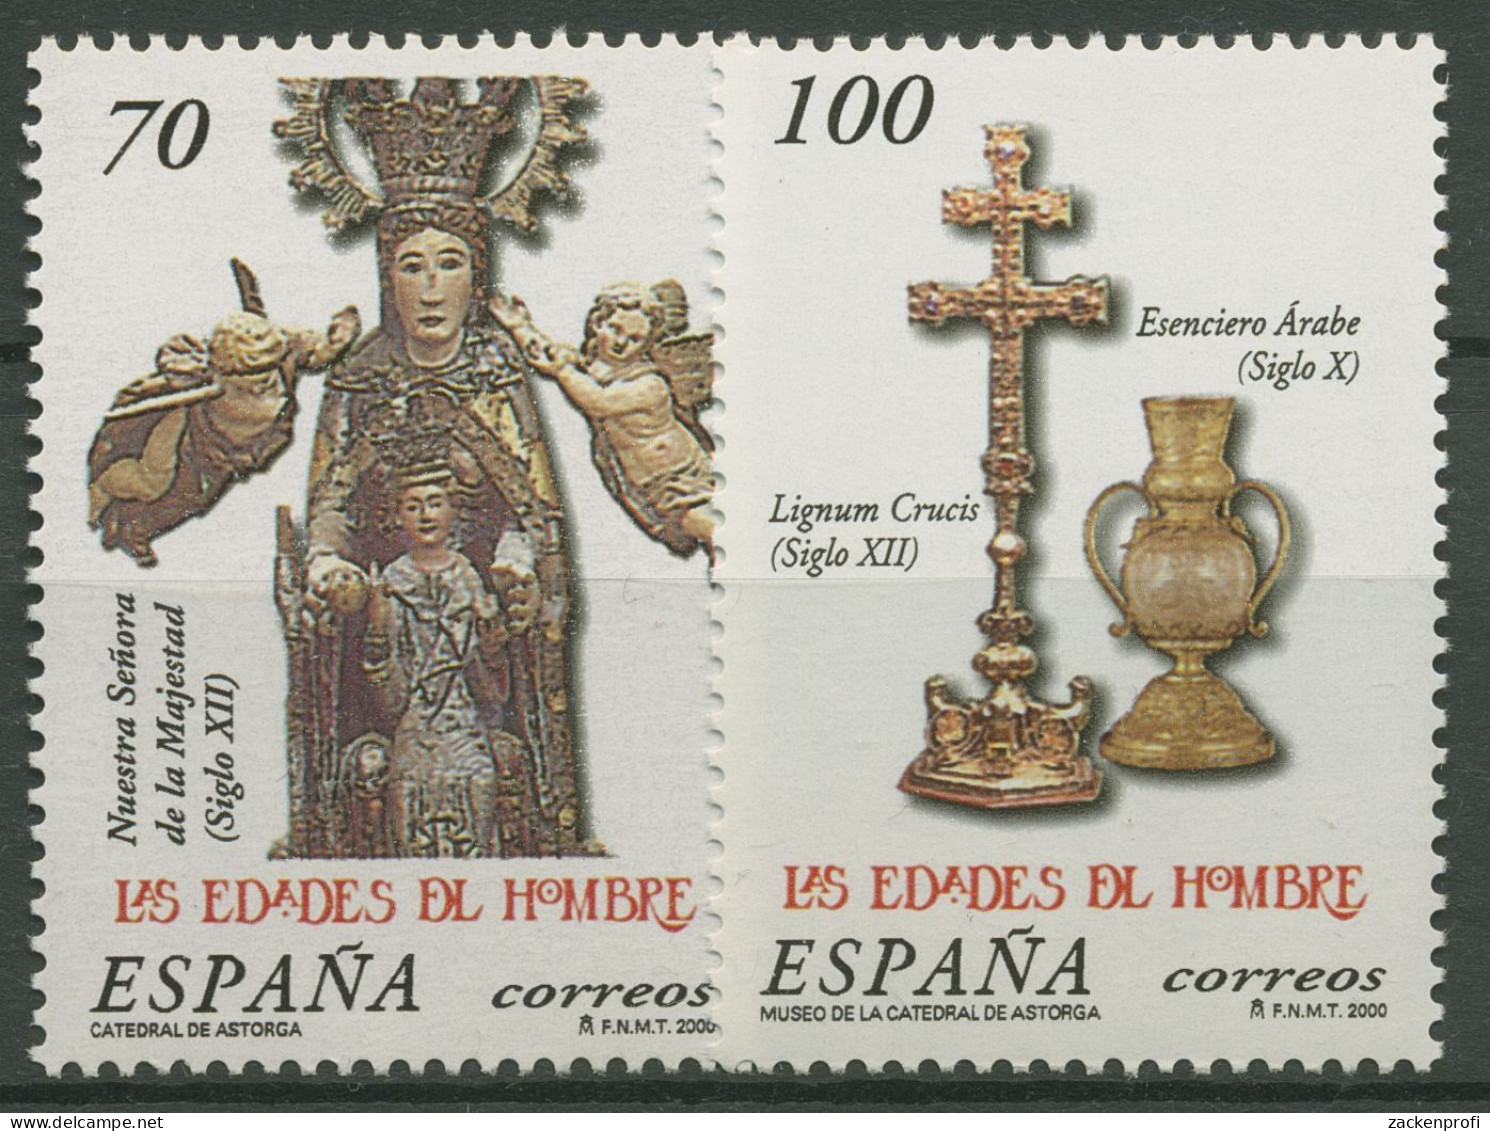 Spanien 2000 Ausstellung Zeitalter Des Menschen Statue 3533/34 Postfrisch - Nuevos